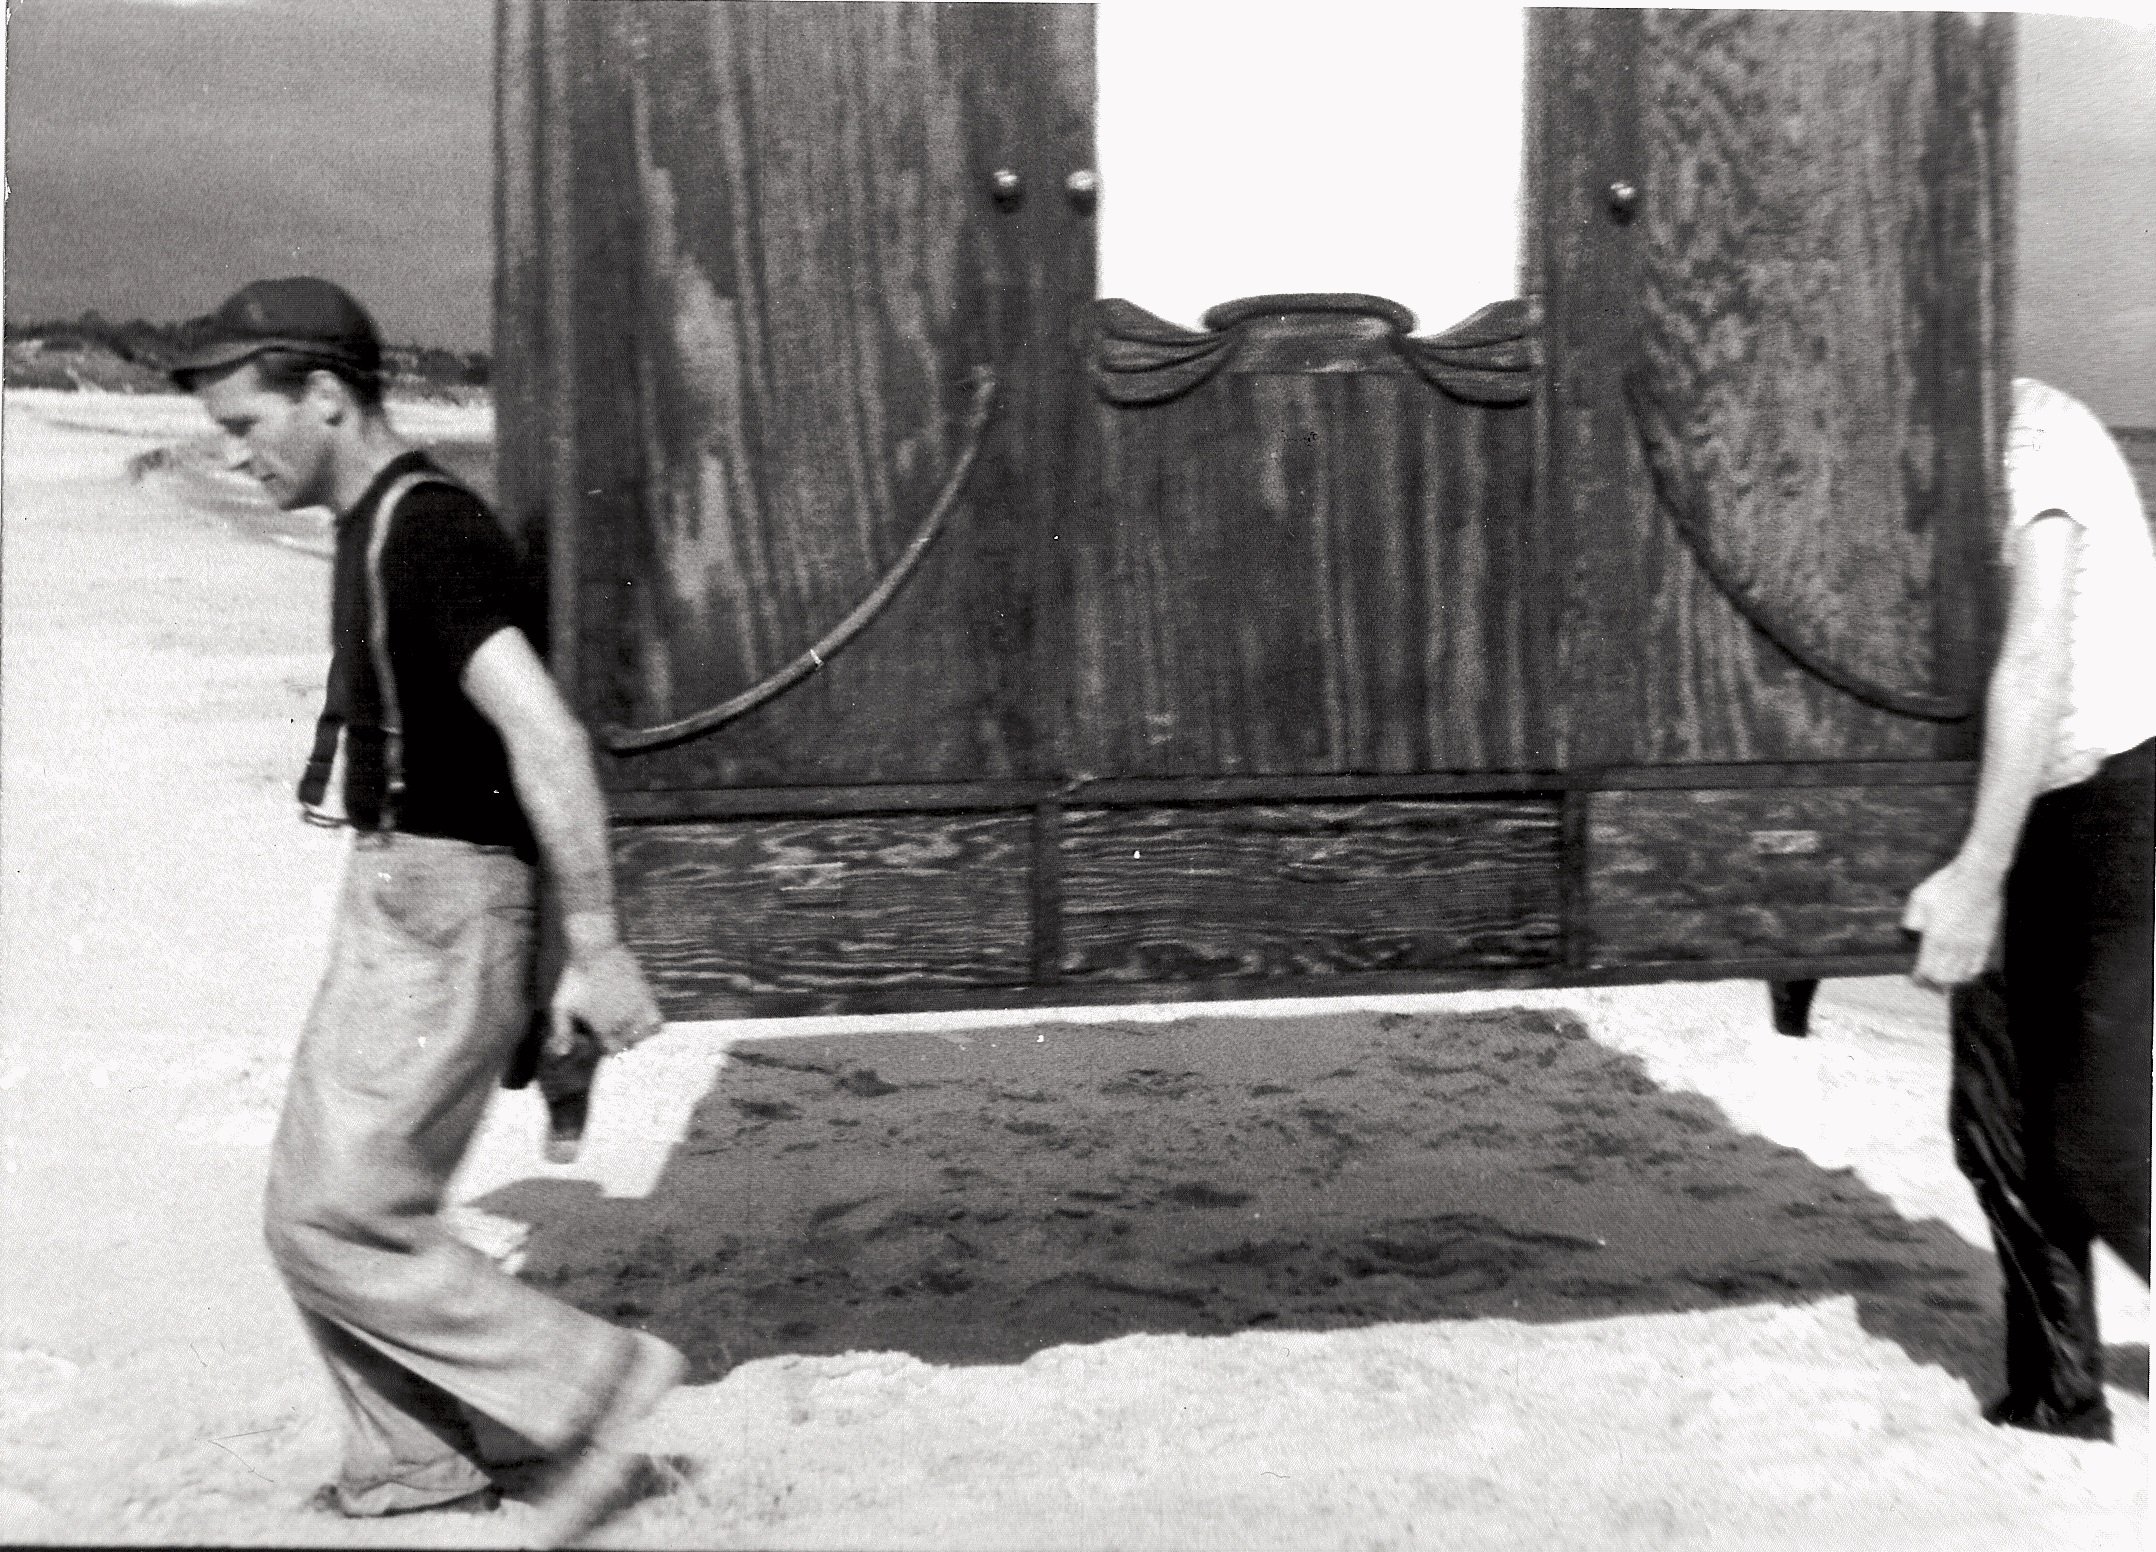  Fot. z filmu „Dwaj ludzie z szafą", reż. Roman Polański, 1958 